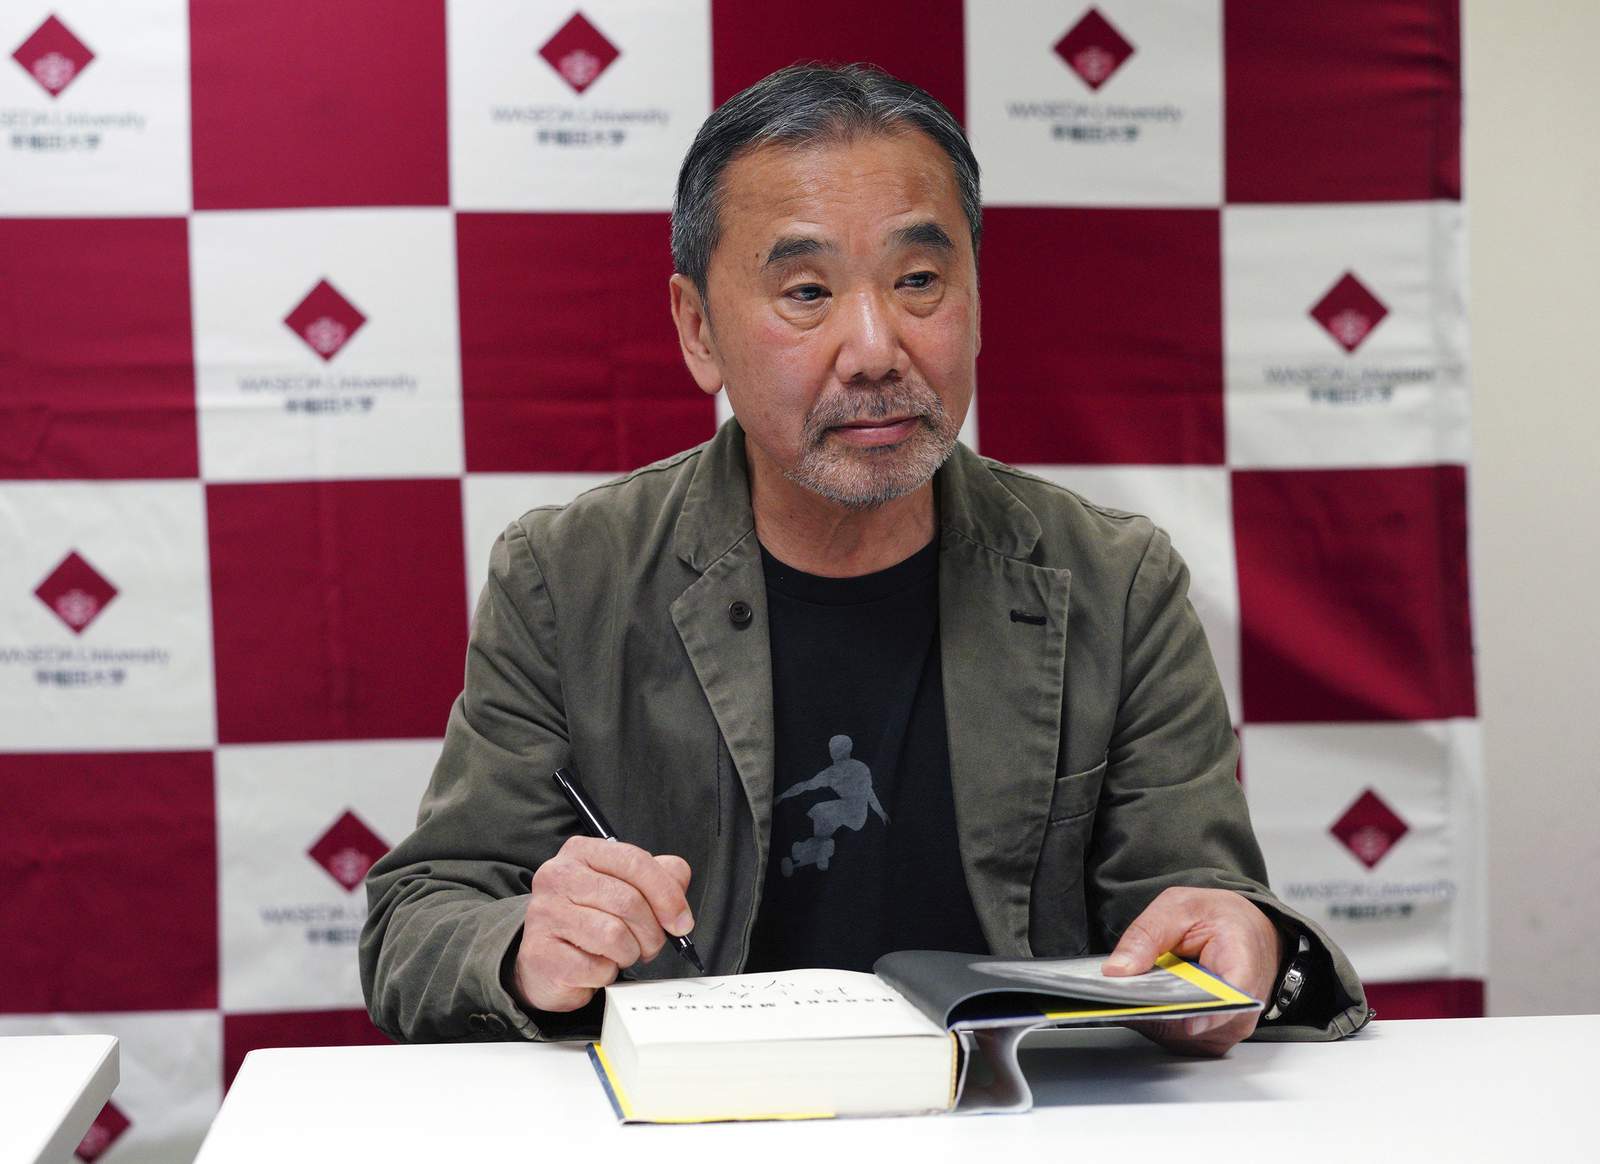 Author Murakami DJs 'Stay Home' radio show to lift spirits